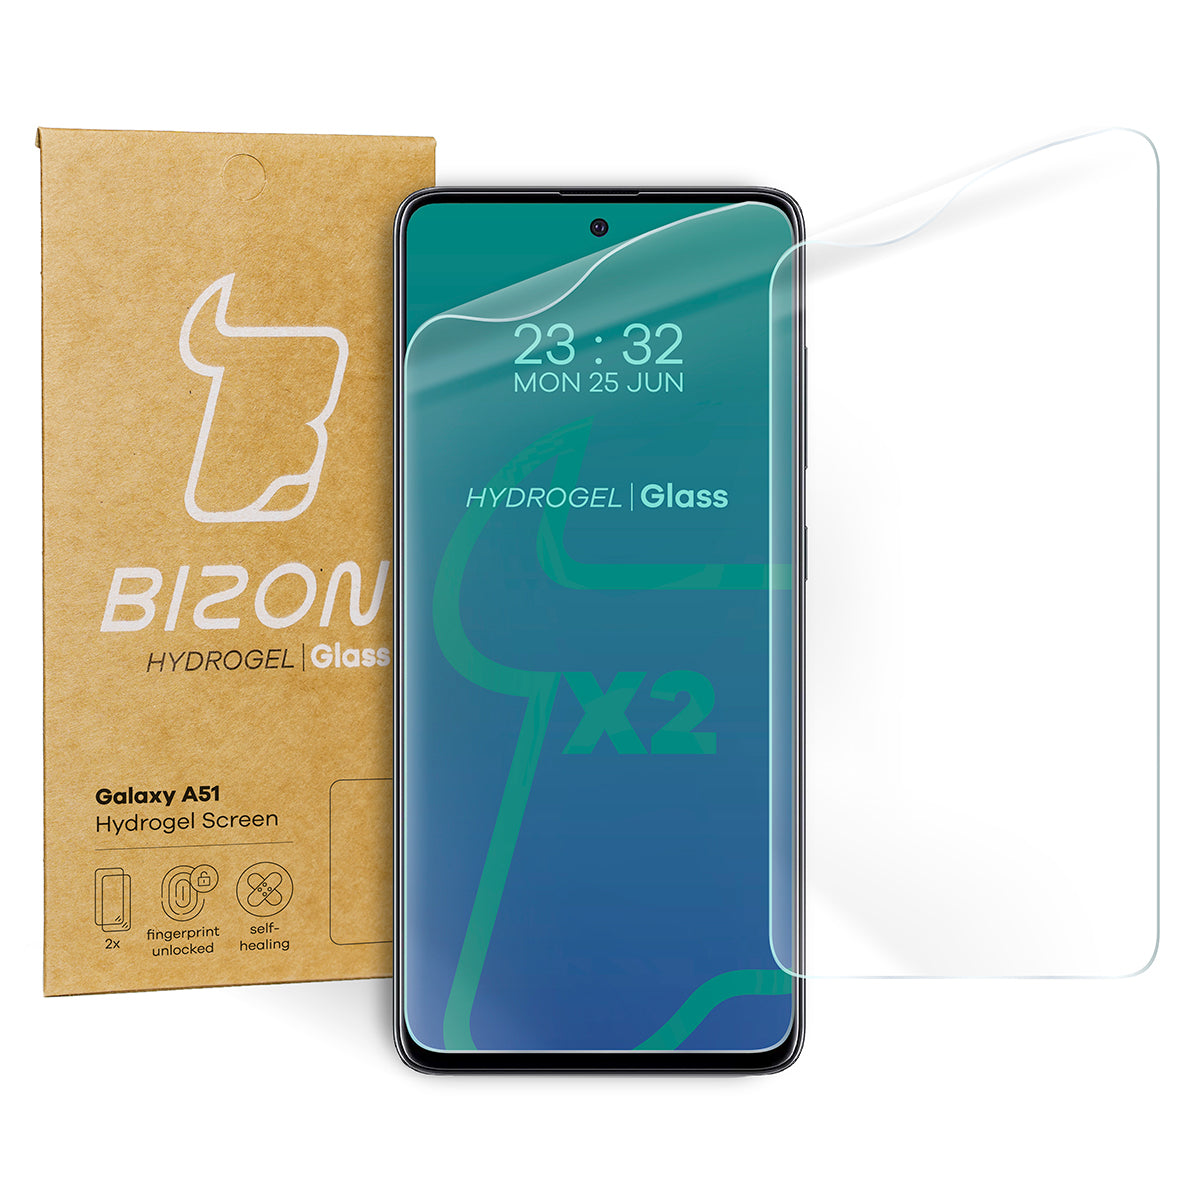 Hydrogel Folie für den Bildschirm Bizon Glass, Galaxy A51, 2 Stück